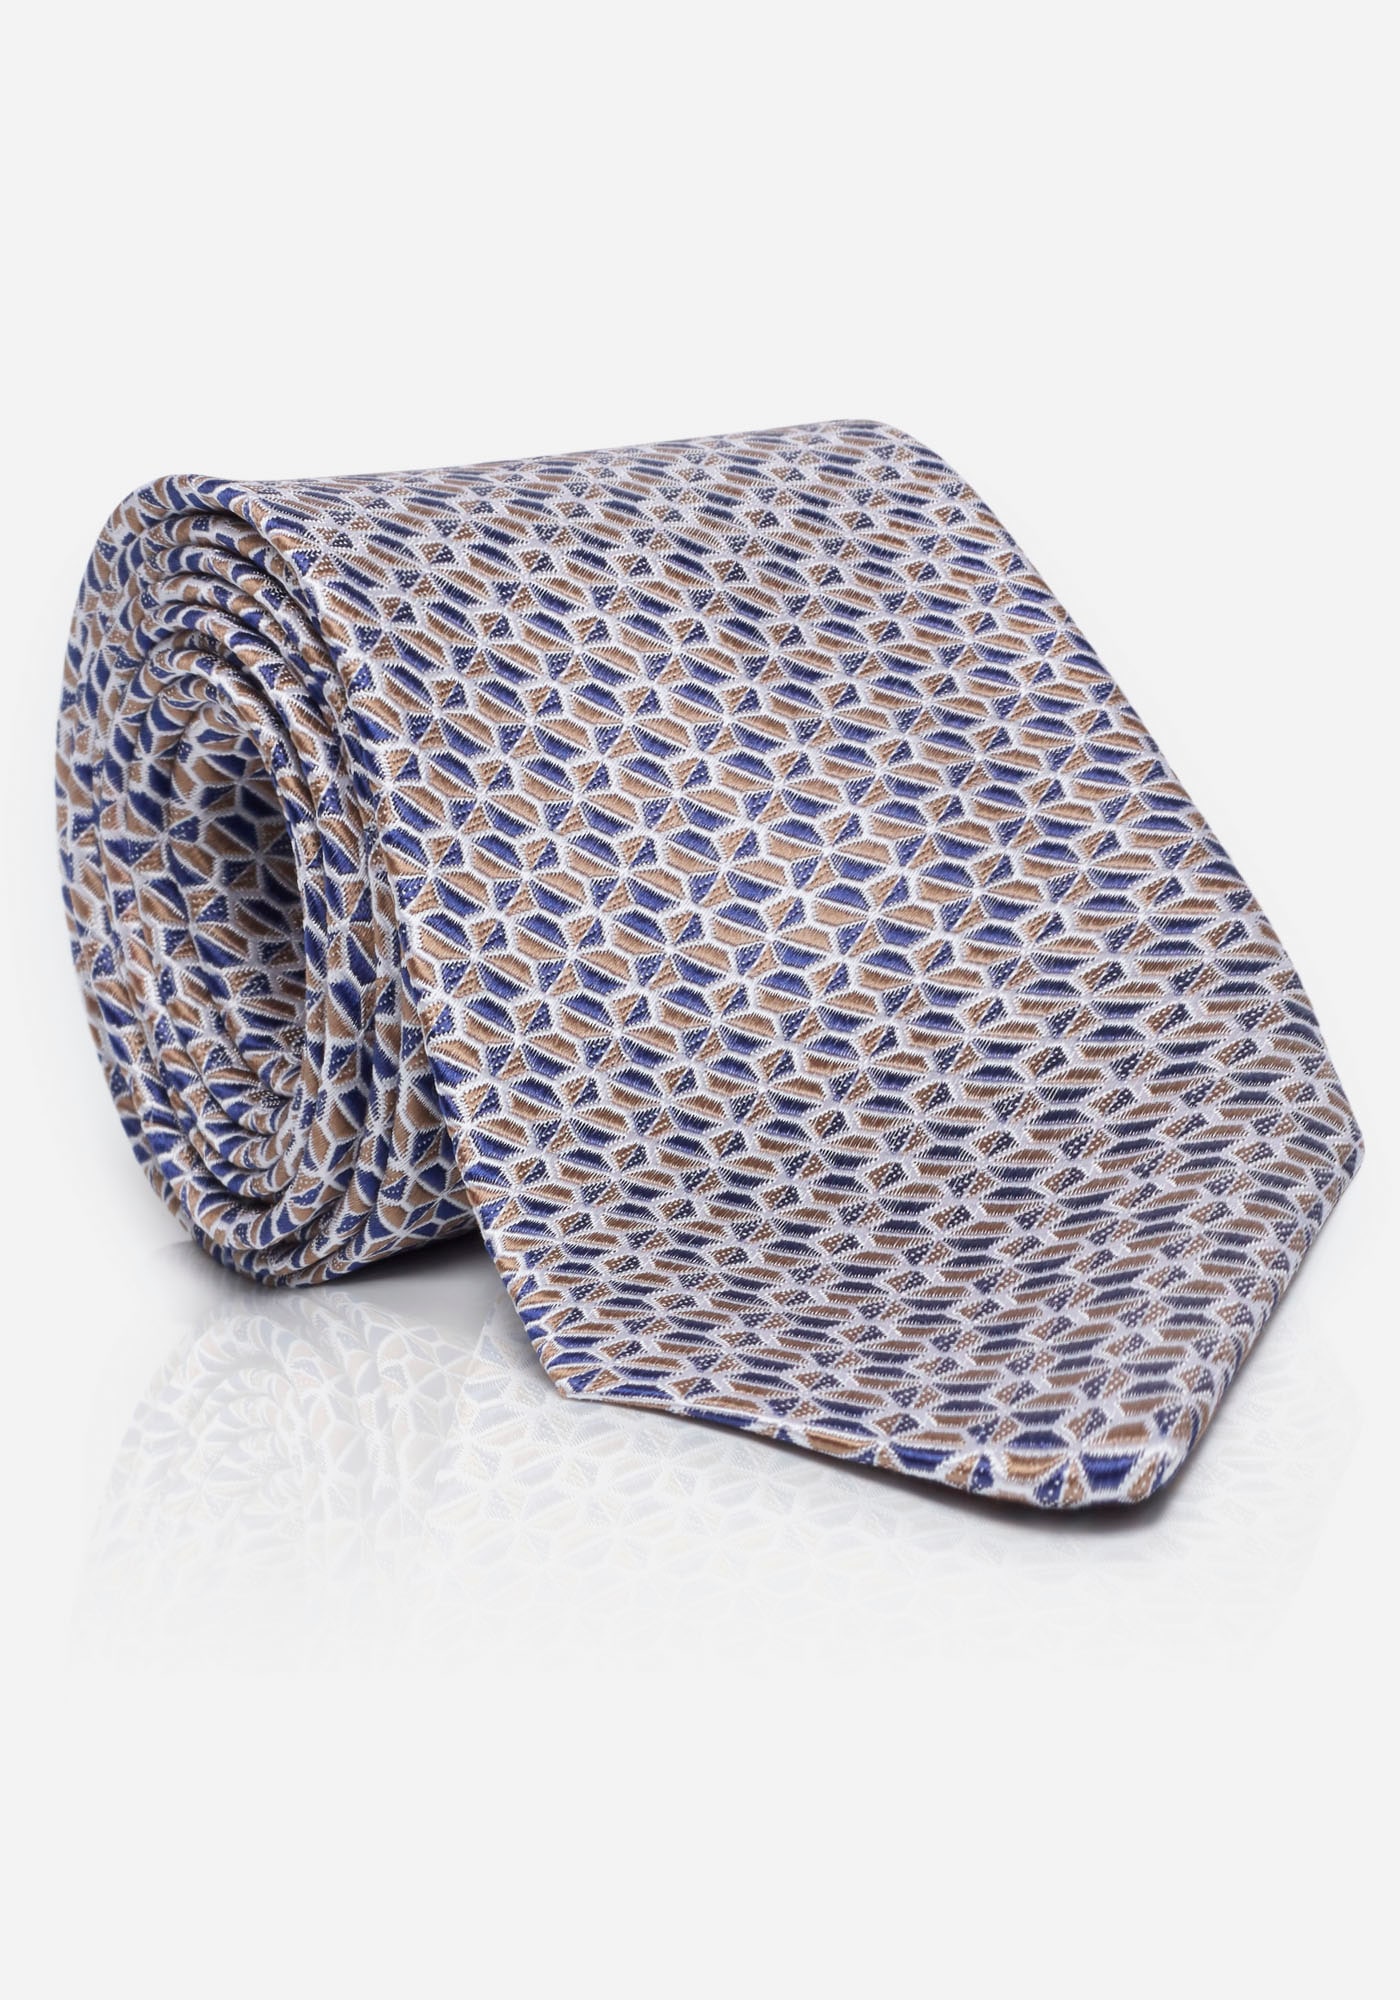 Krawatte, mit ausgefallenem Frühling-Sommer-Design